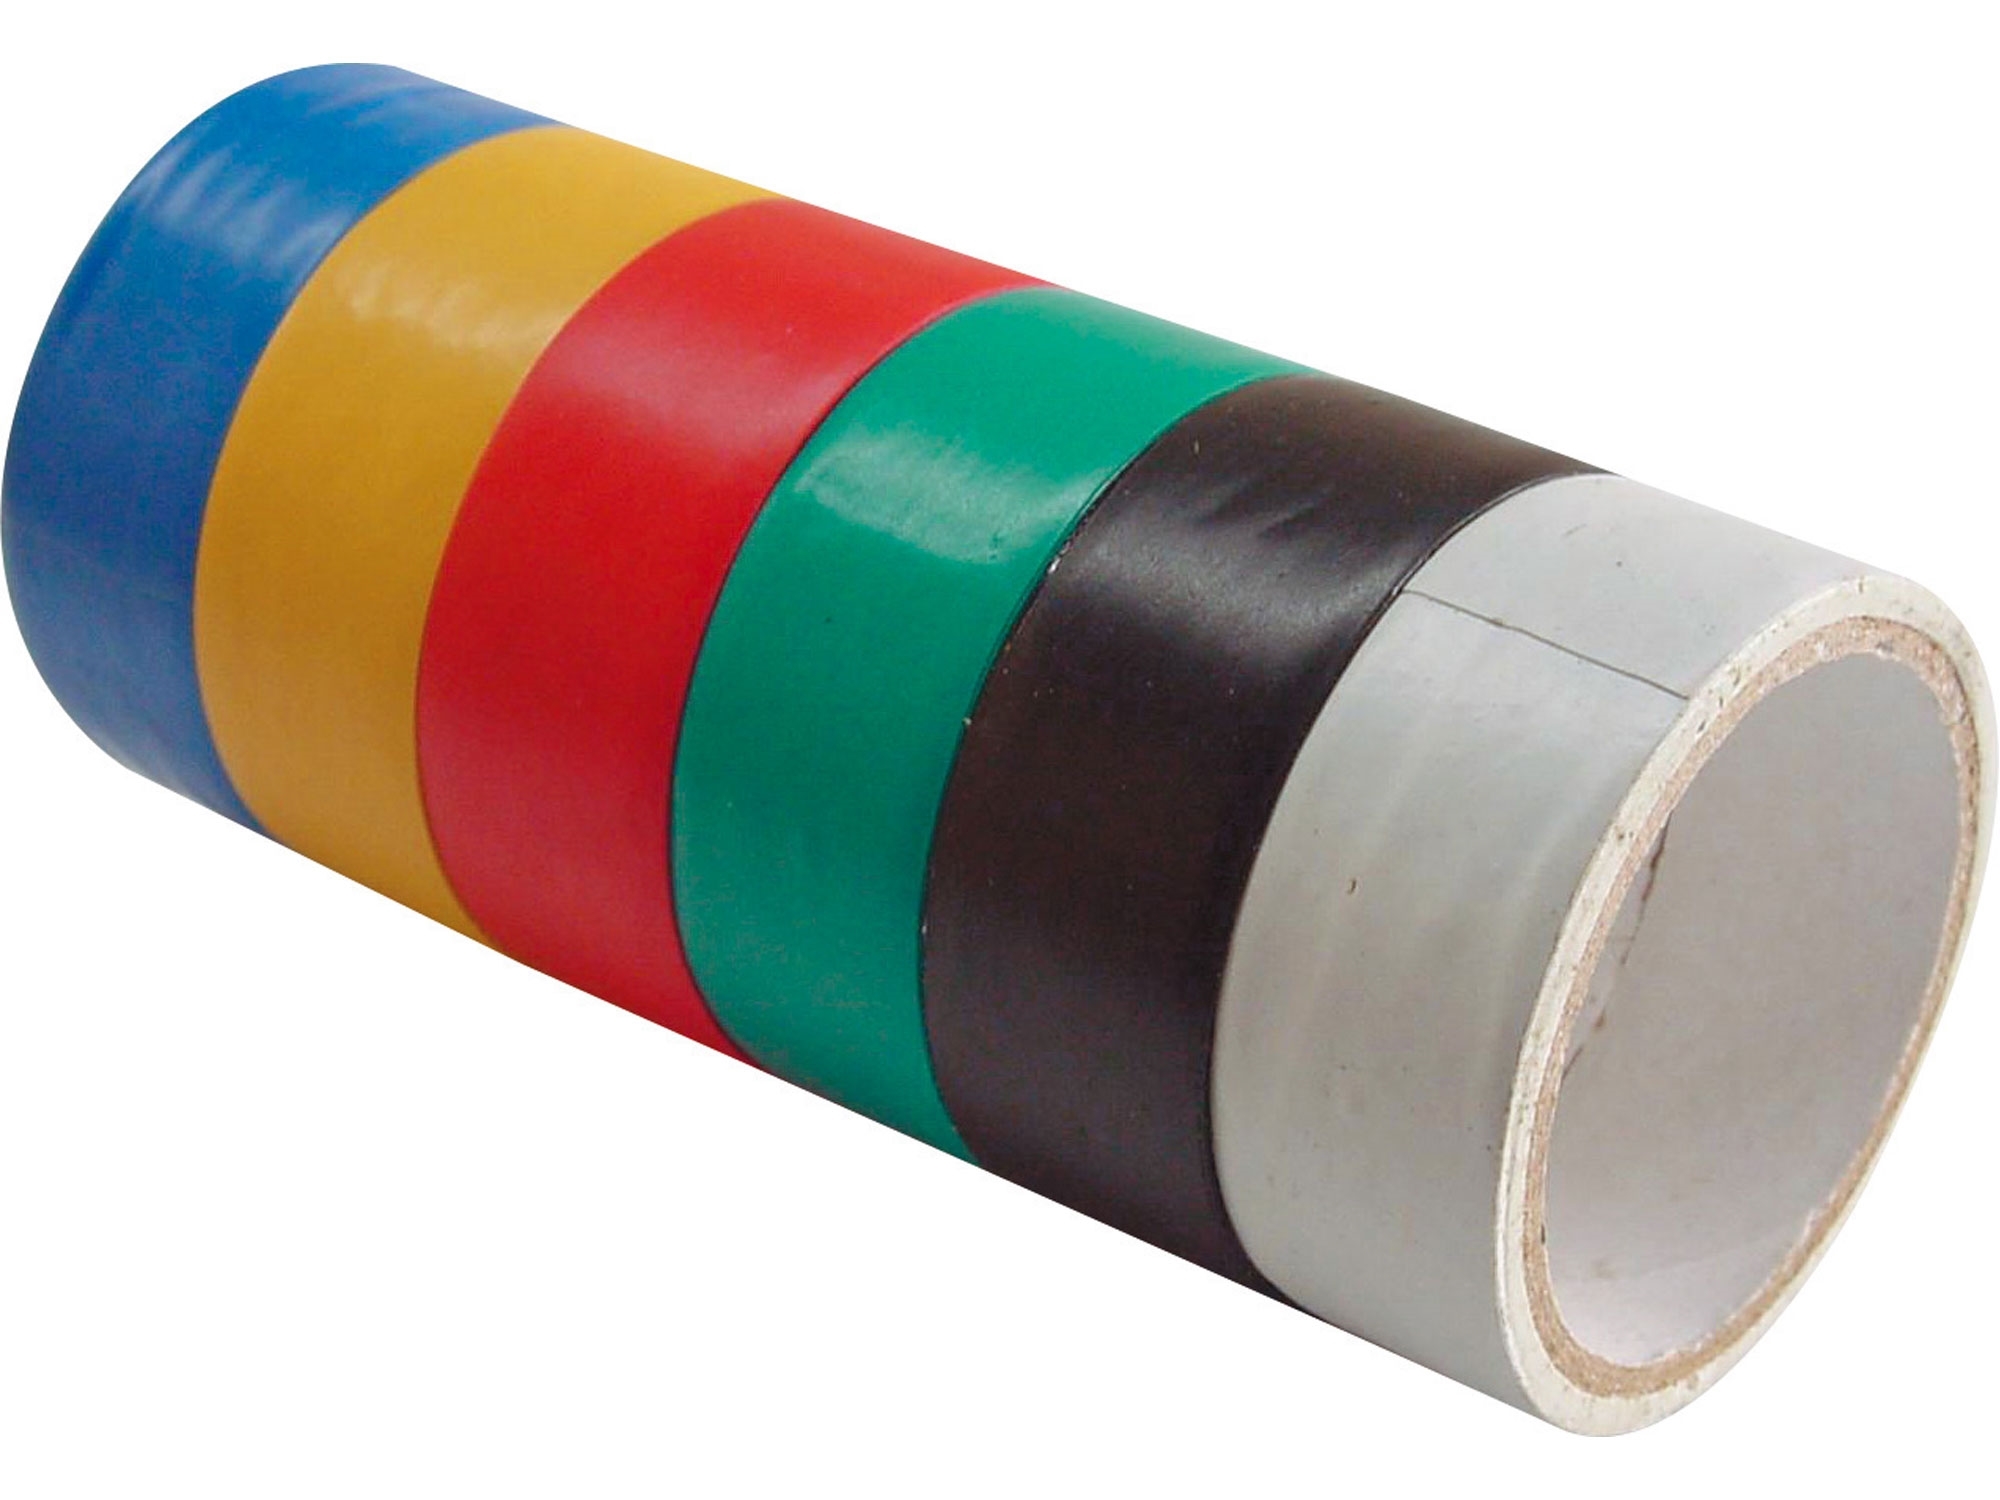 pásky izolační PVC, sada 6ks, 19mm x 18m, (3m x 6ks)